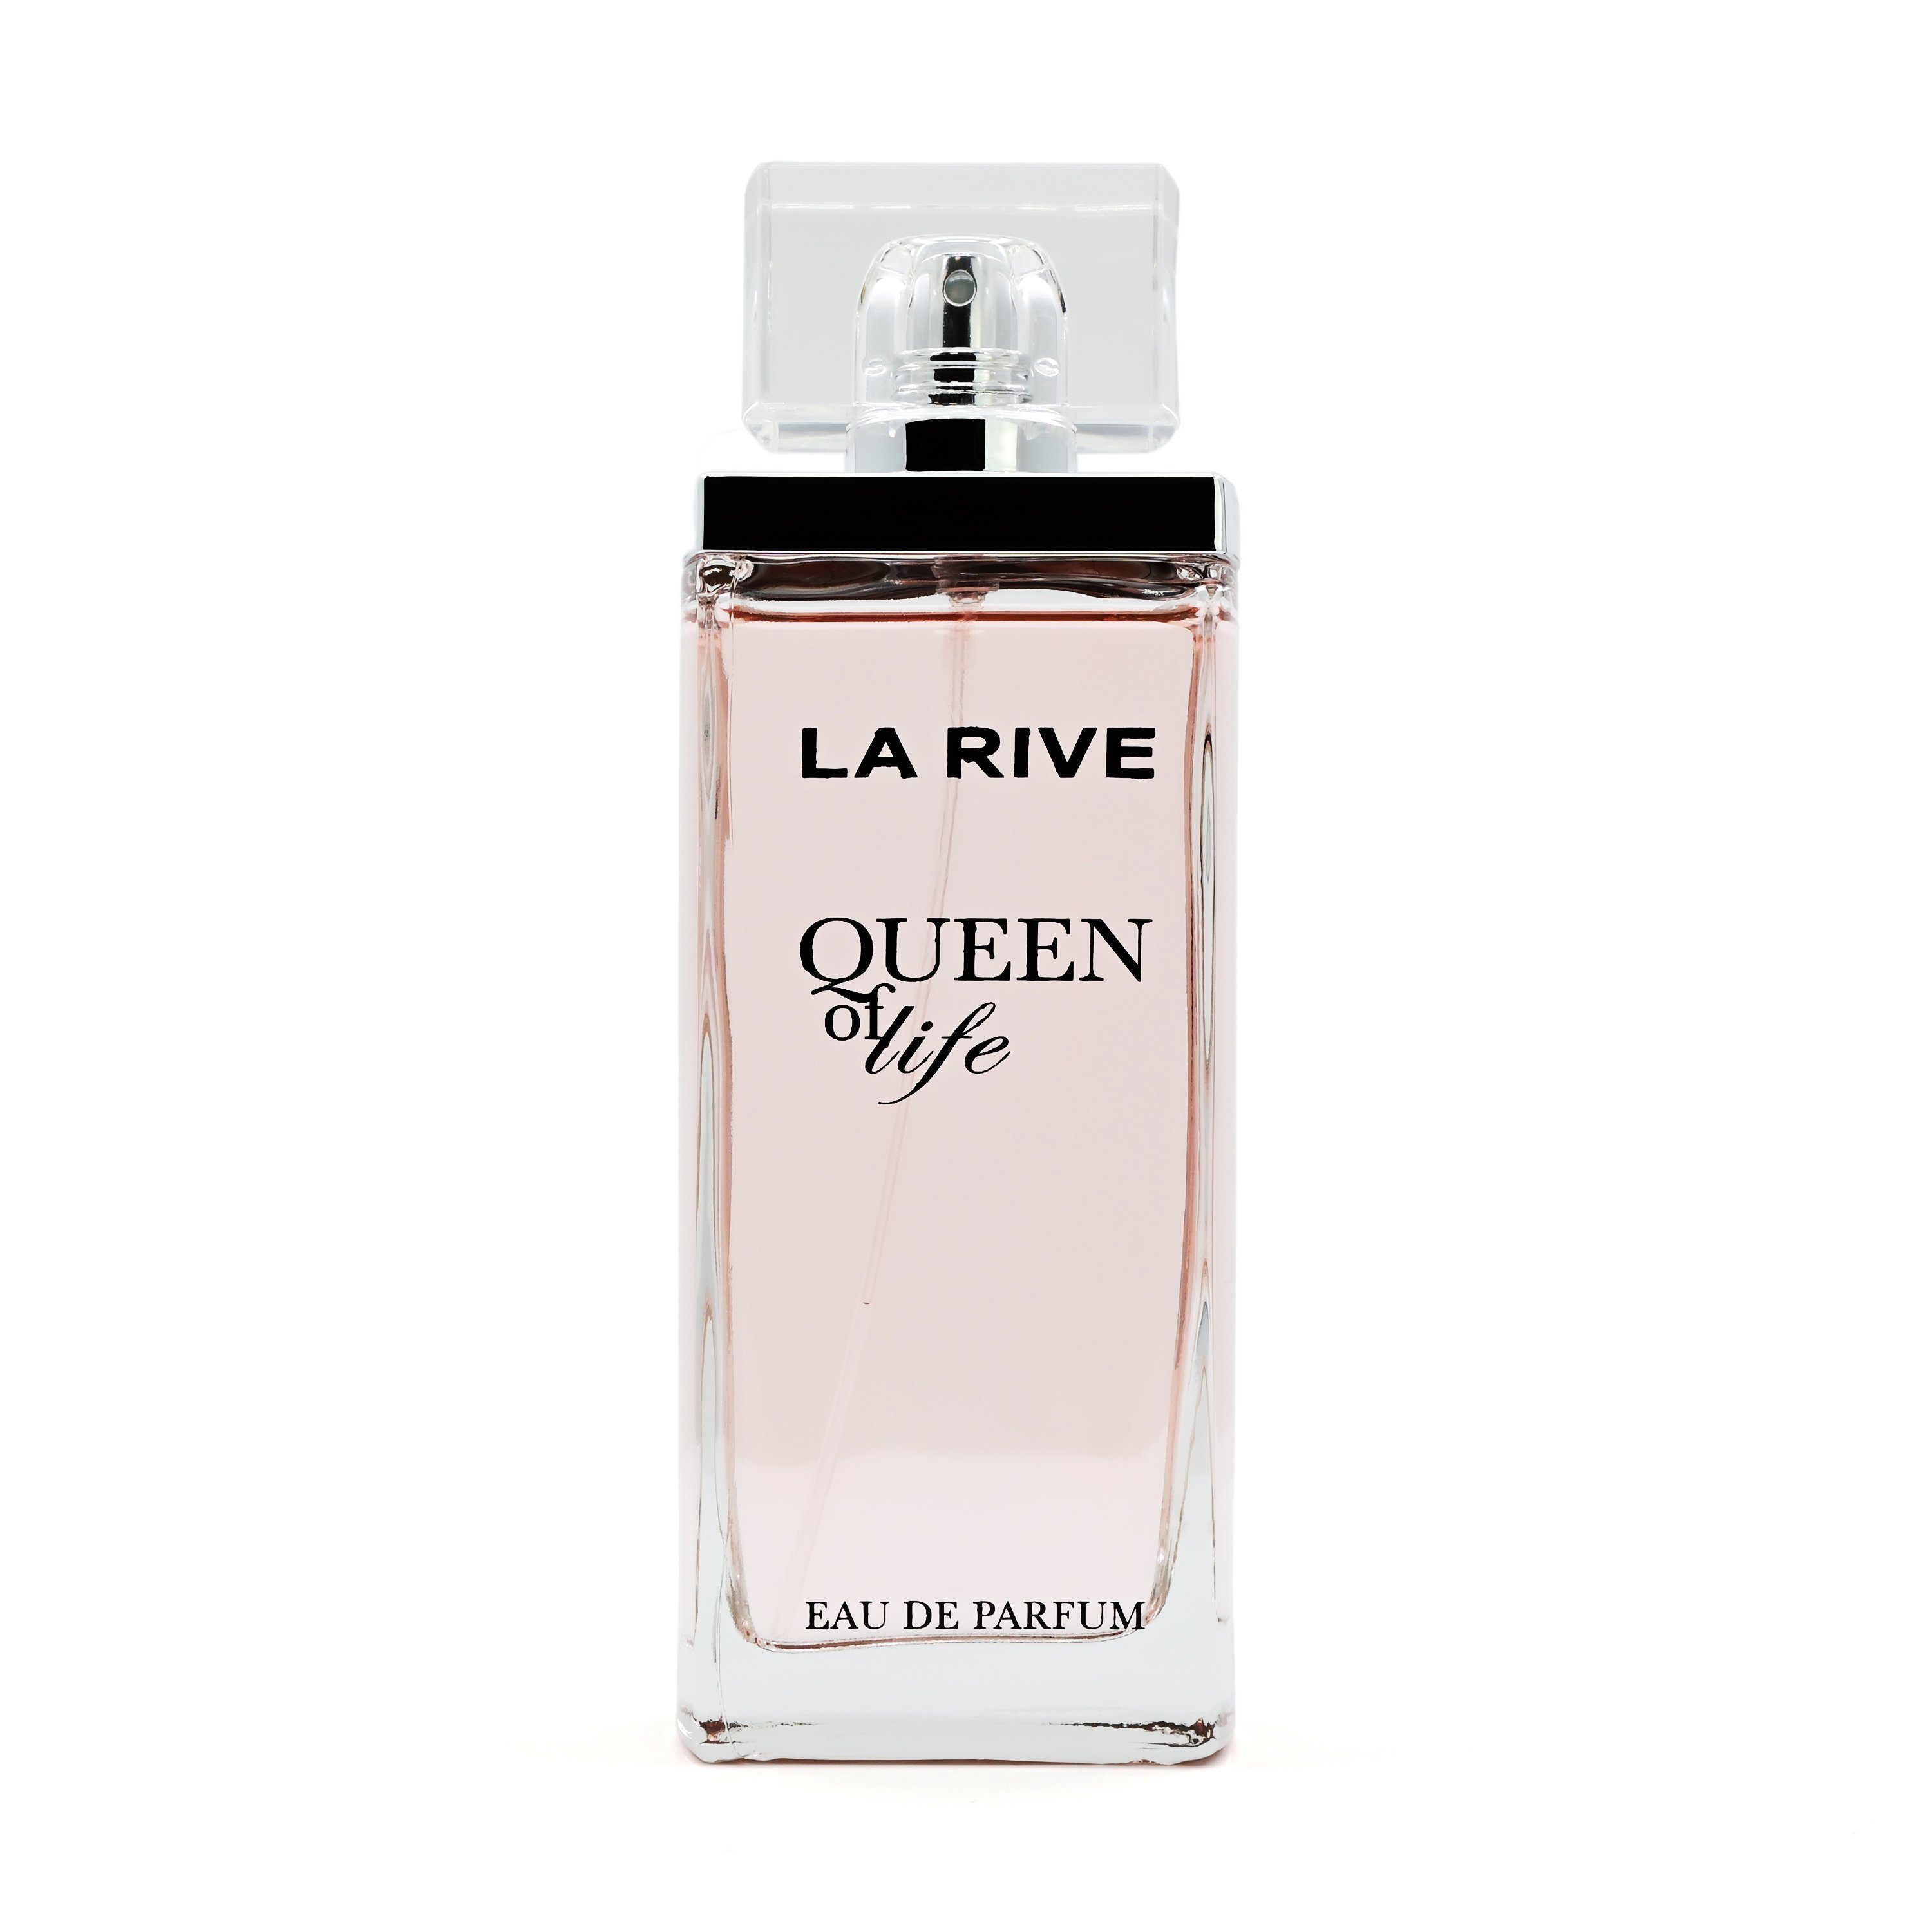 75 of Parfum Queen Eau Life RIVE La Parfum - Eau LA de de - Rive ml